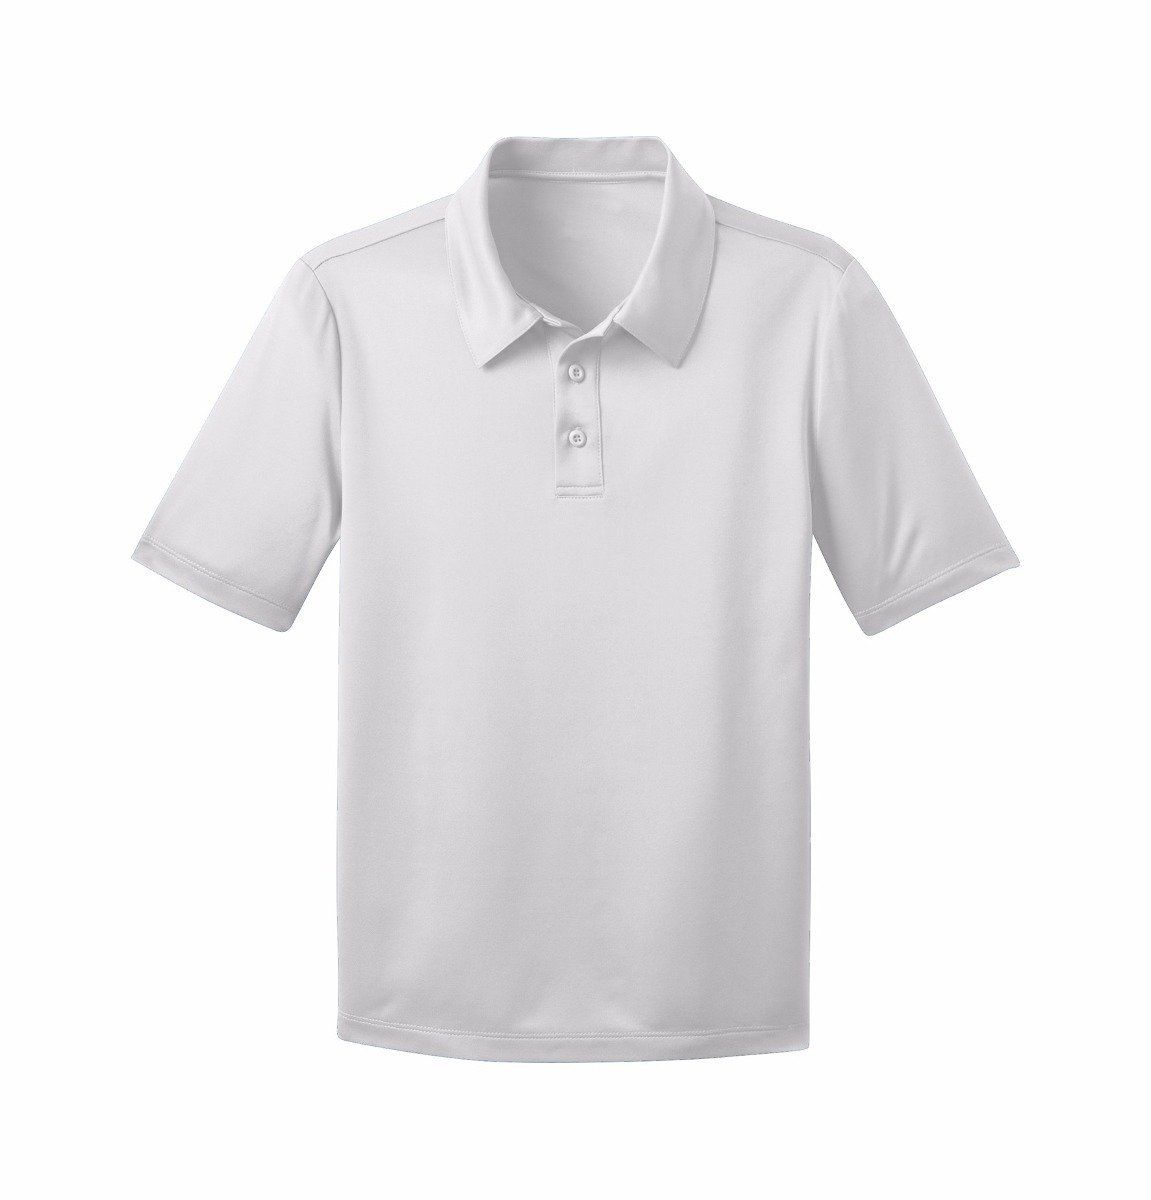 Camiseta Gola Polo Personalizada